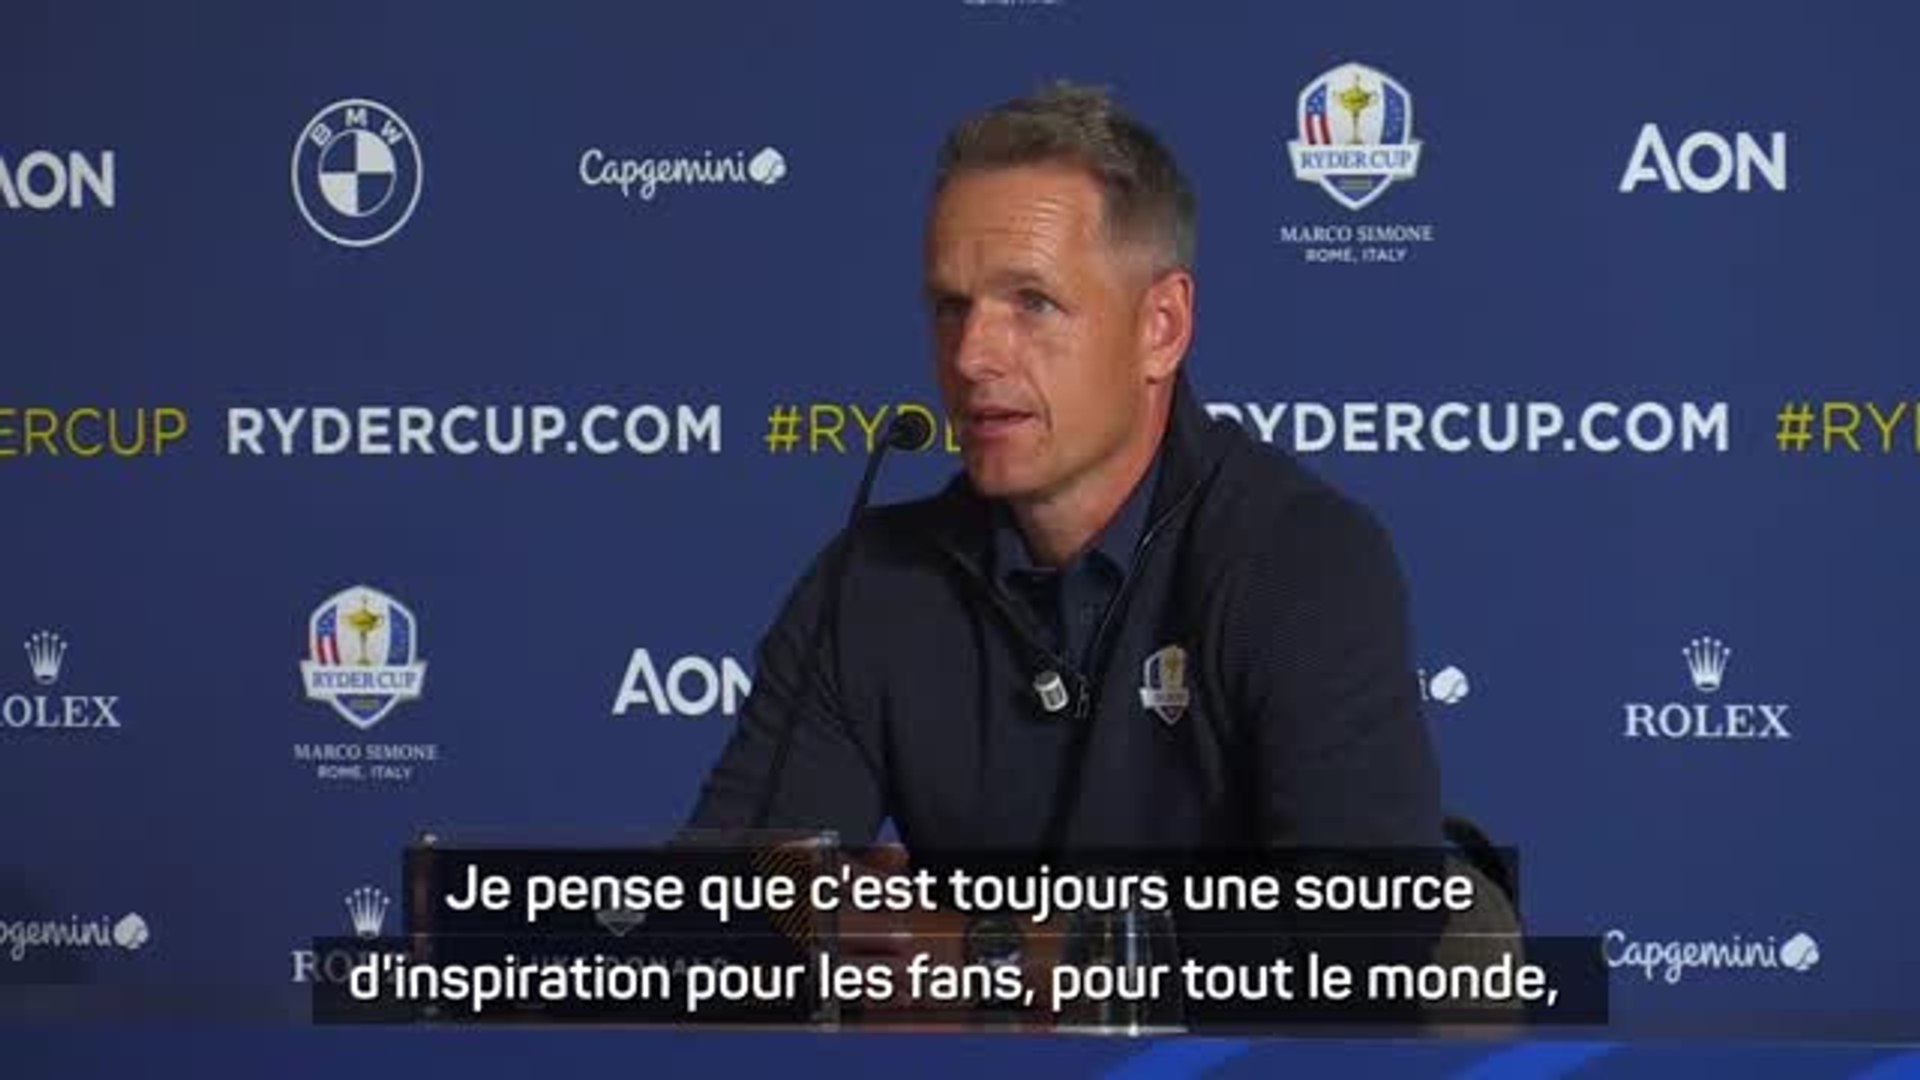 Ryder Cup - Donald : "La Ryder Cup est un excellent moyen d'unifier tout le  monde" - Vidéo Dailymotion